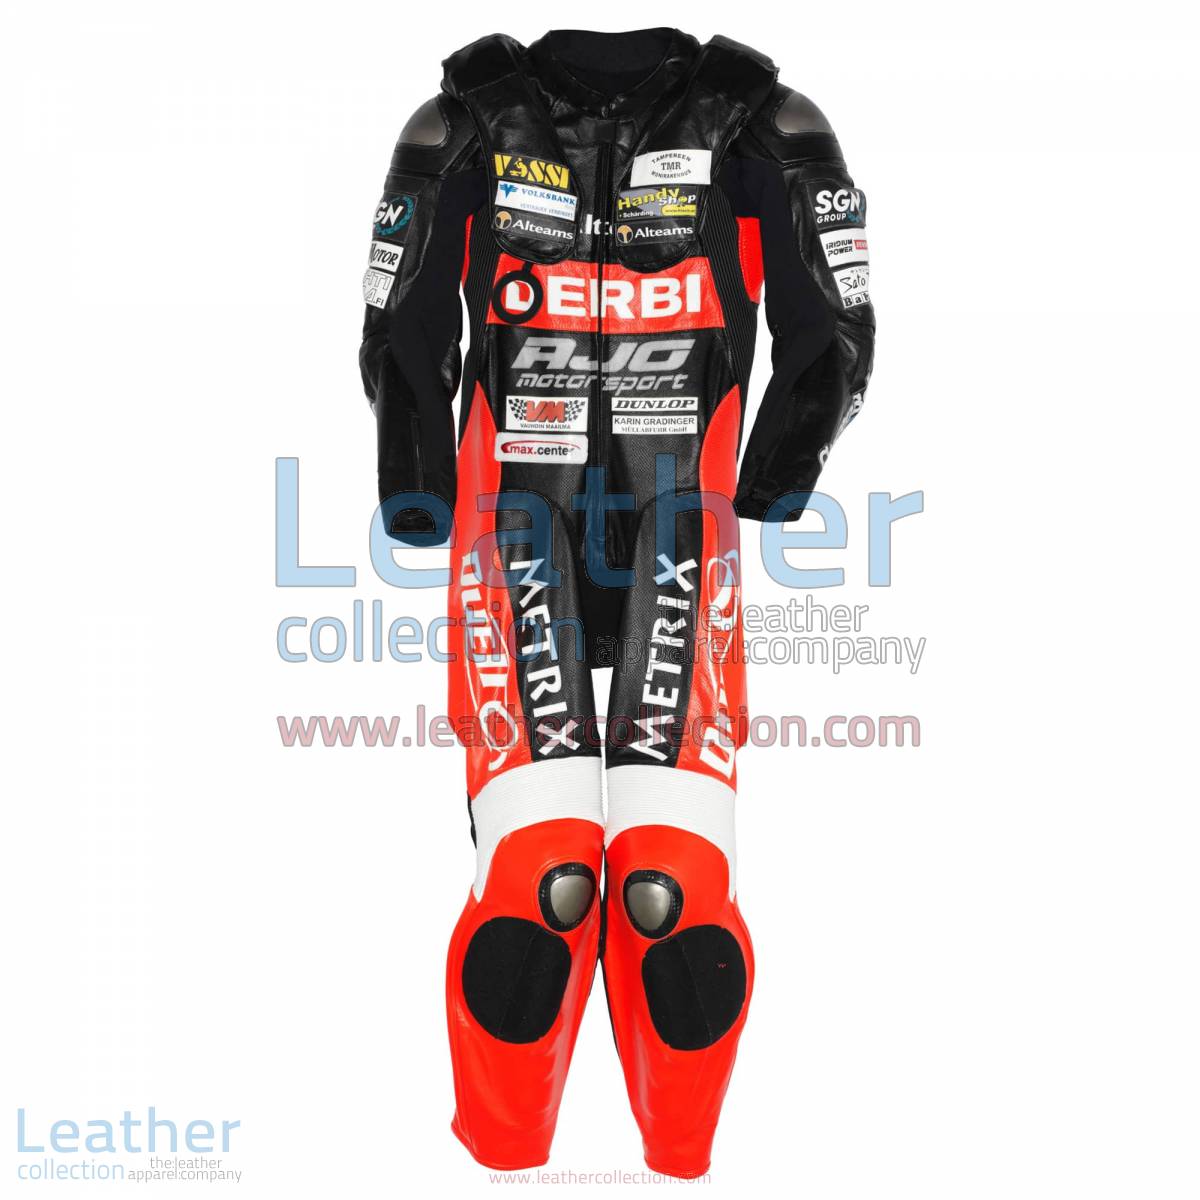 Michi Ranseder Debri GP 2007 Motorbike Suit | motorcycle apparel,motorcycle suit